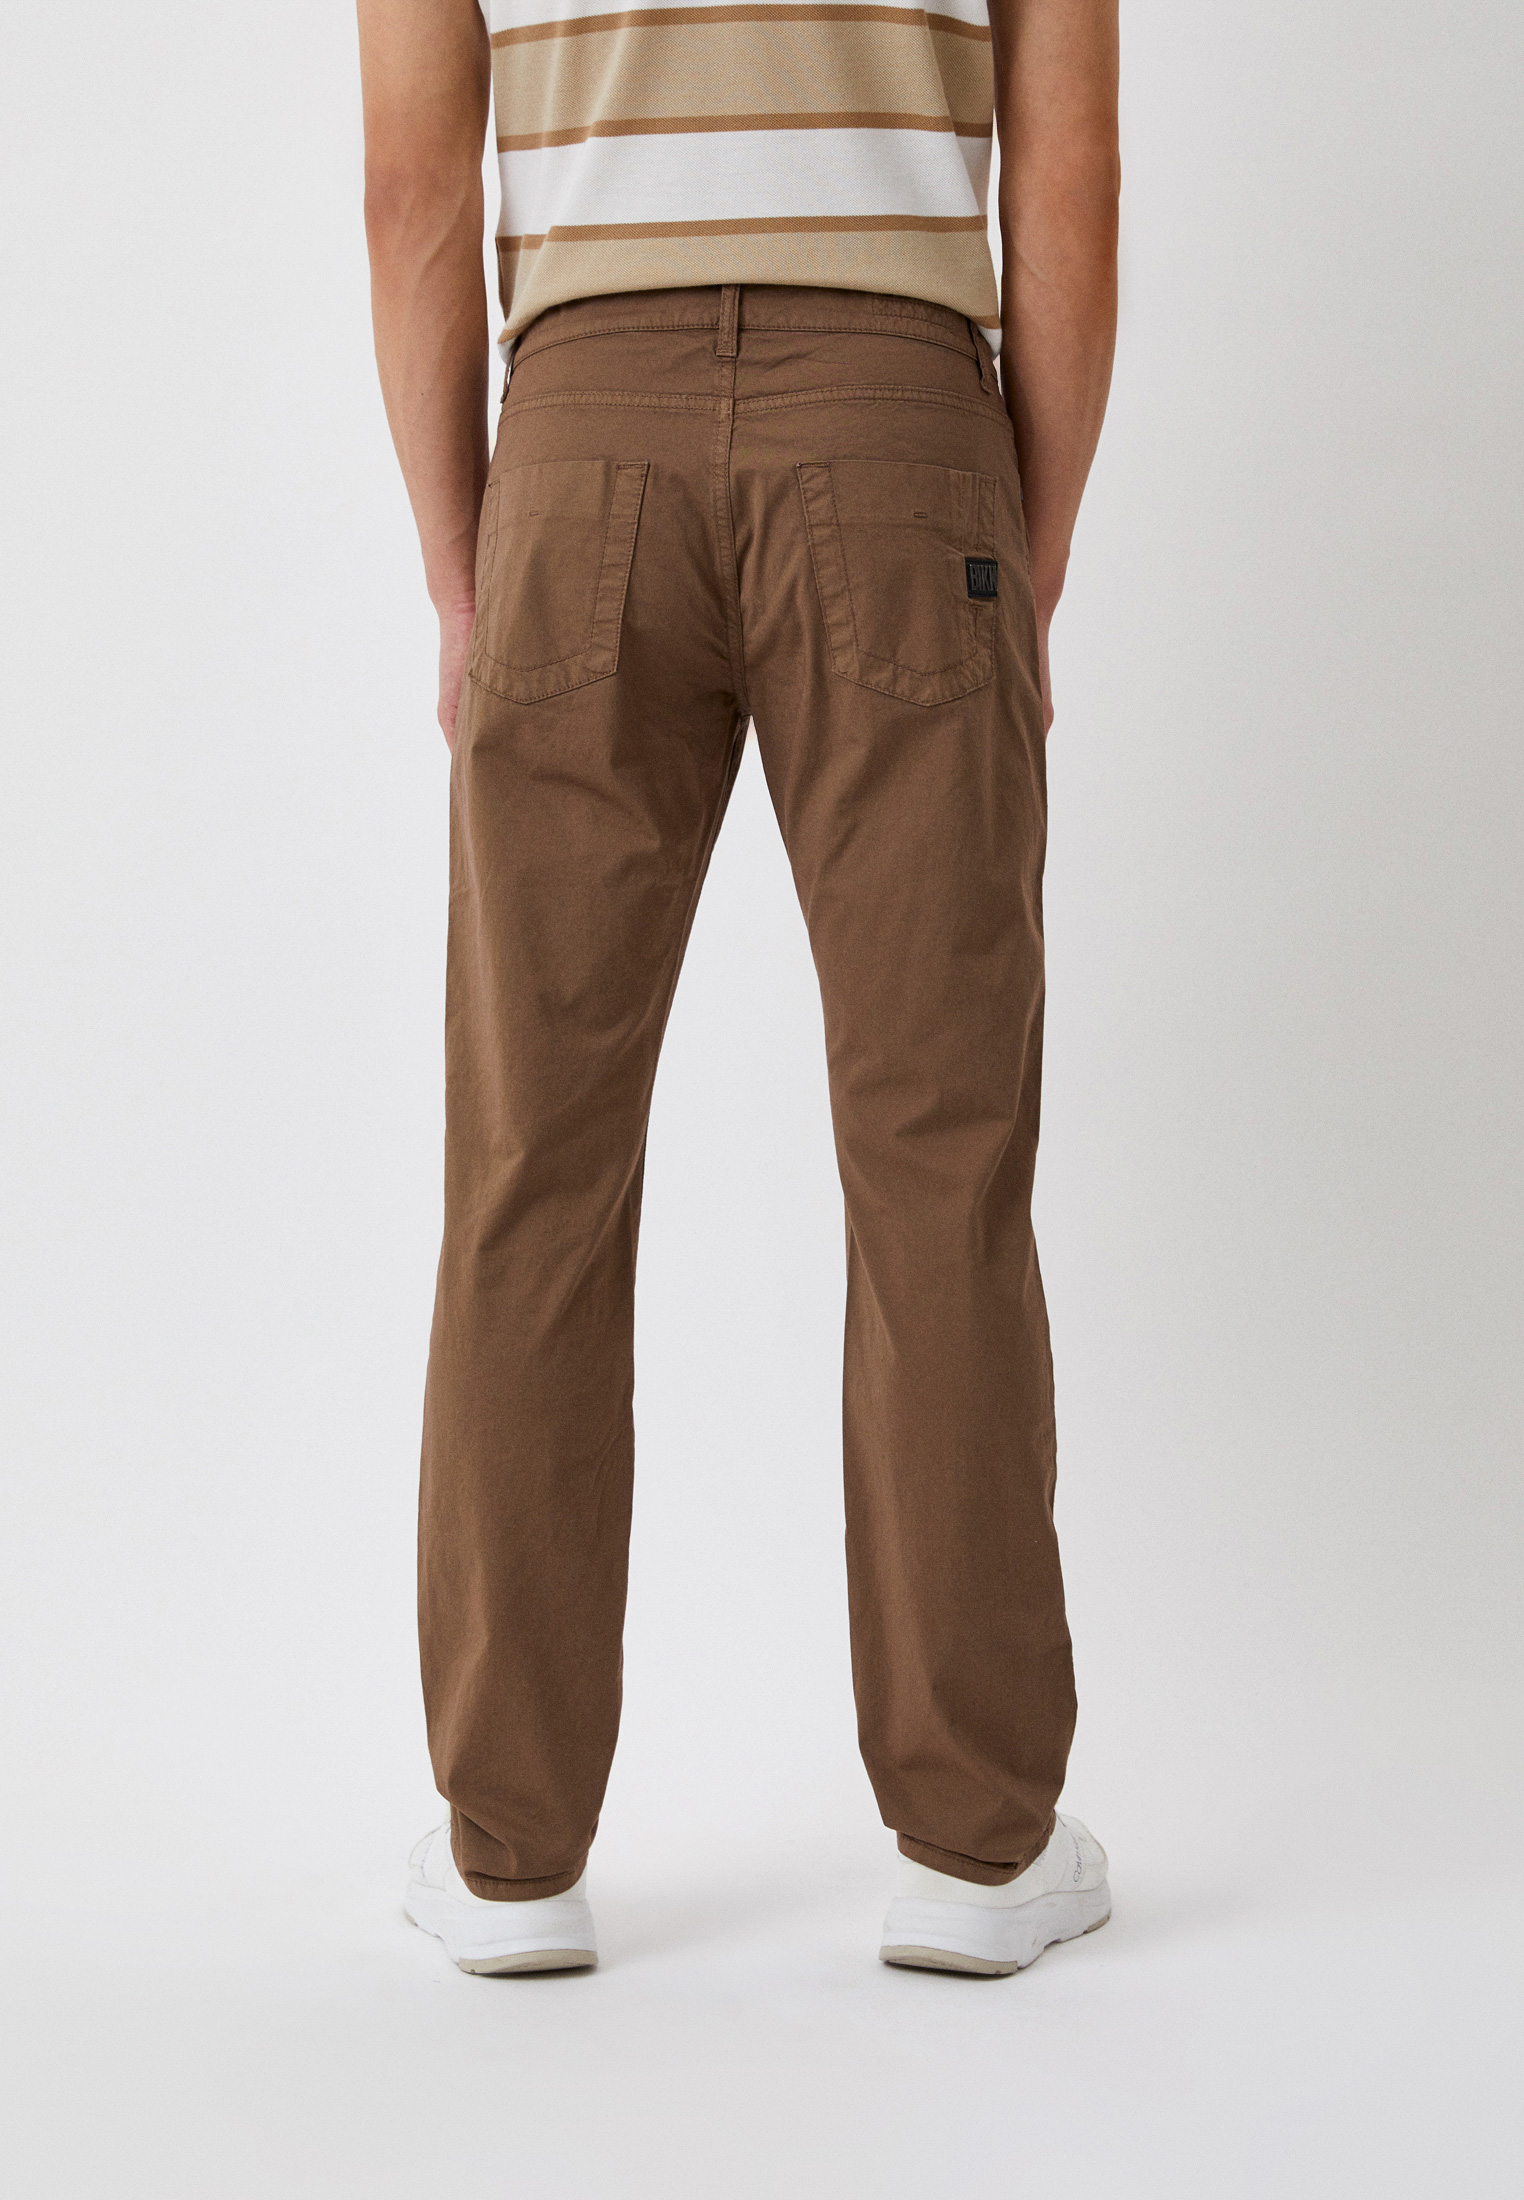 Мужские брюки Bikkembergs (Биккембергс) CQ62BFJSB099: изображение 3